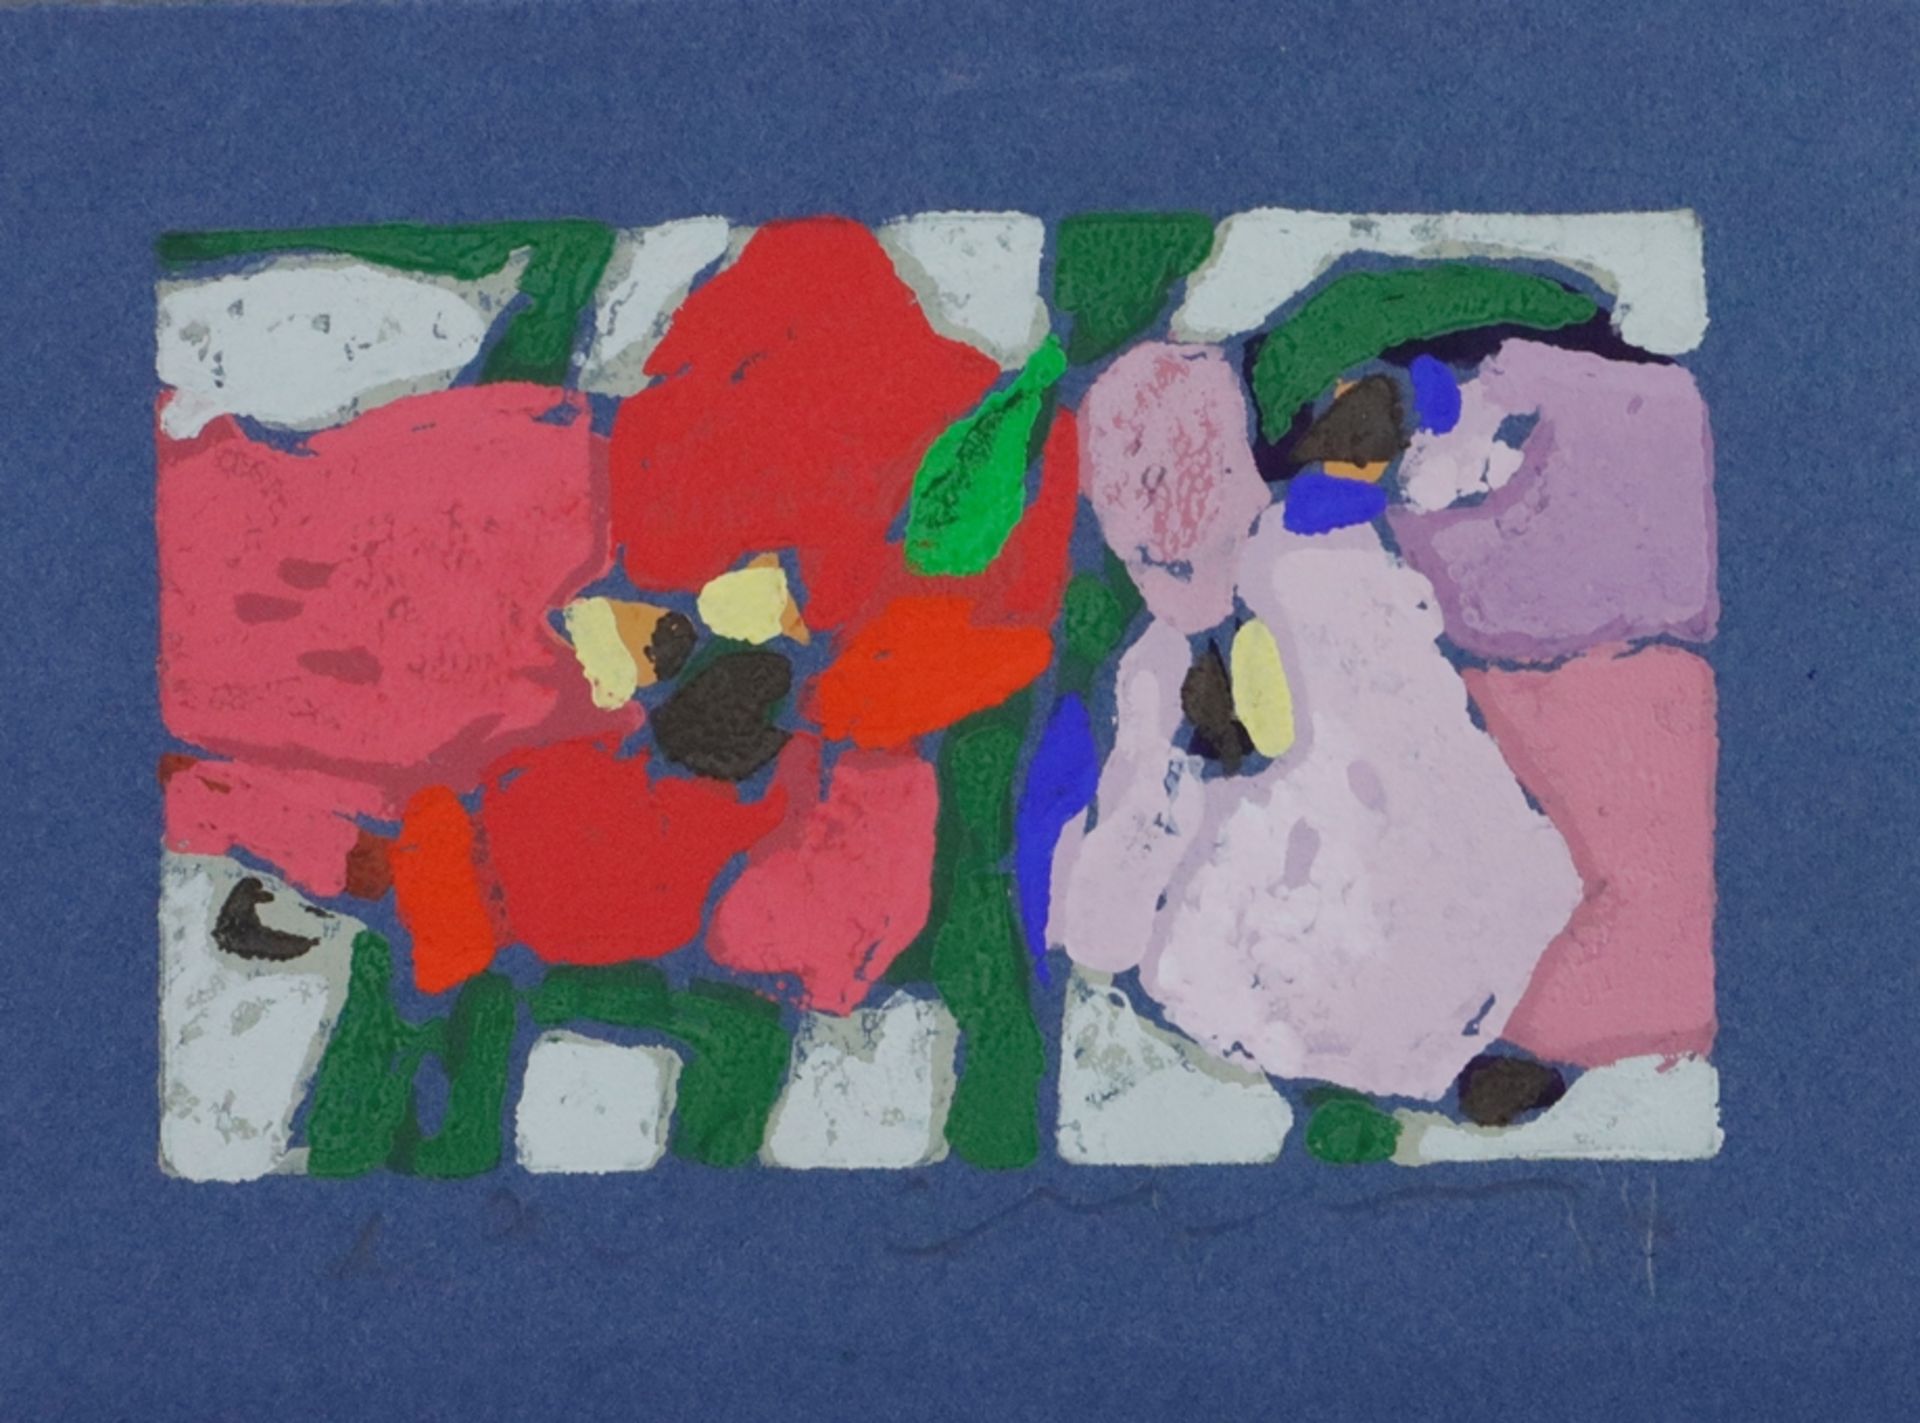 Fußmann, Klaus (*1938 Velbert) - "Rosen rot/mauve", 2014, Farblinolschnitt, unten rechts signiert u